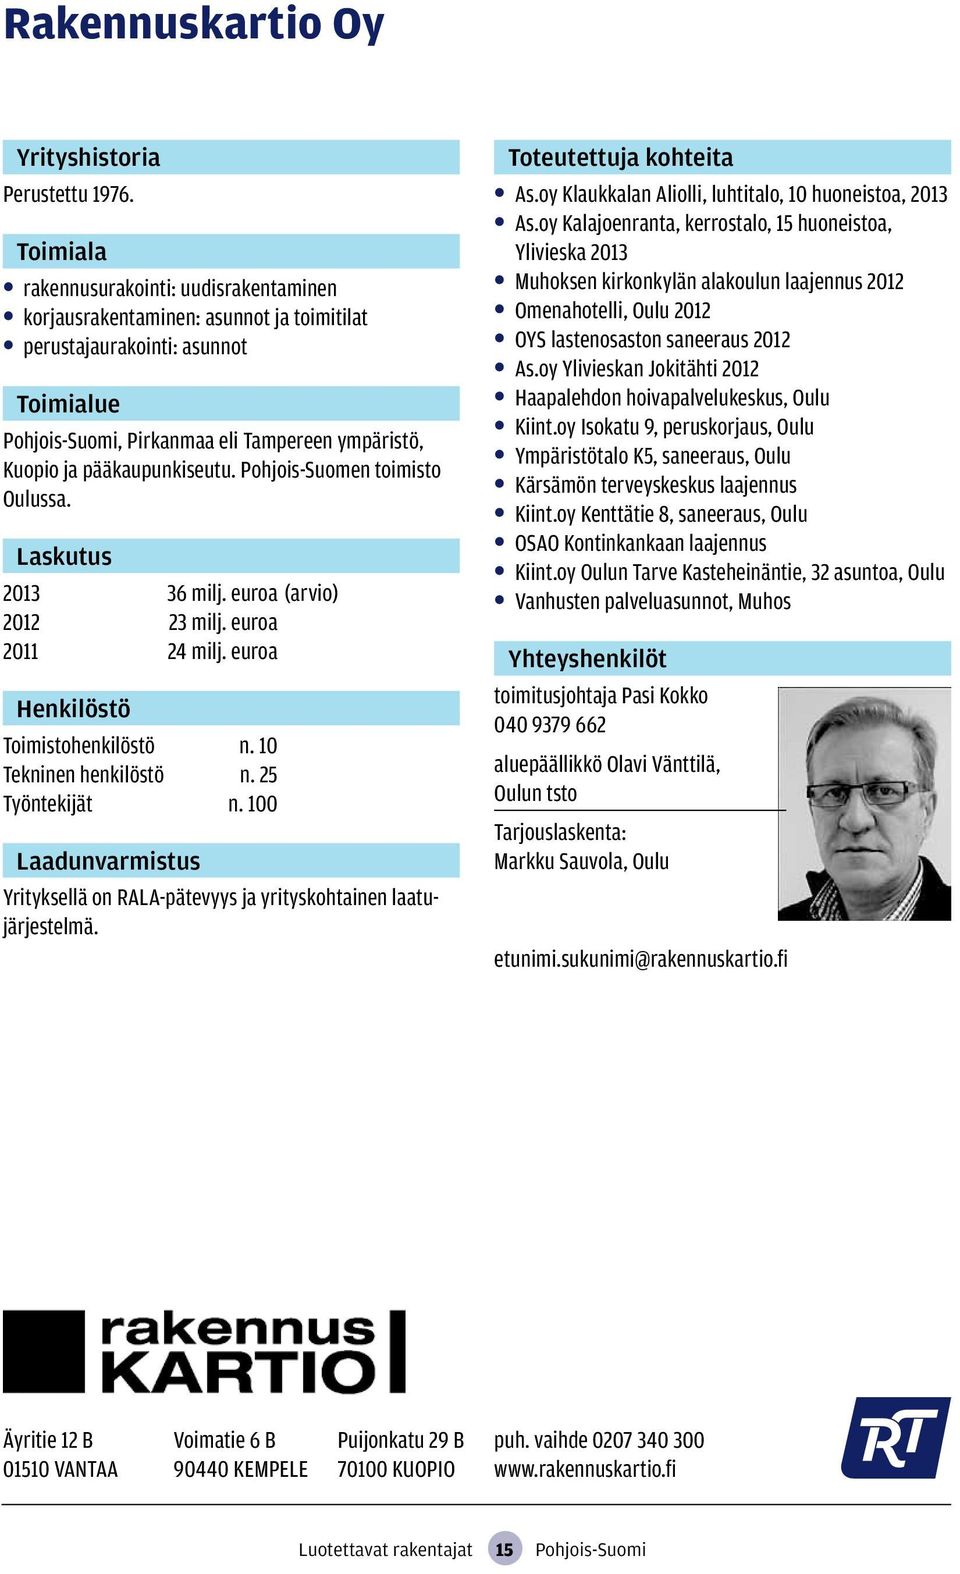 Pohjois-Suomen toimisto Oulussa. 2013 36 milj. euroa (arvio) 2012 23 milj. euroa 2011 24 milj. euroa Toimistohenkilöstö n. 10 Tekninen henkilöstö n. 25 Työntekijät n.